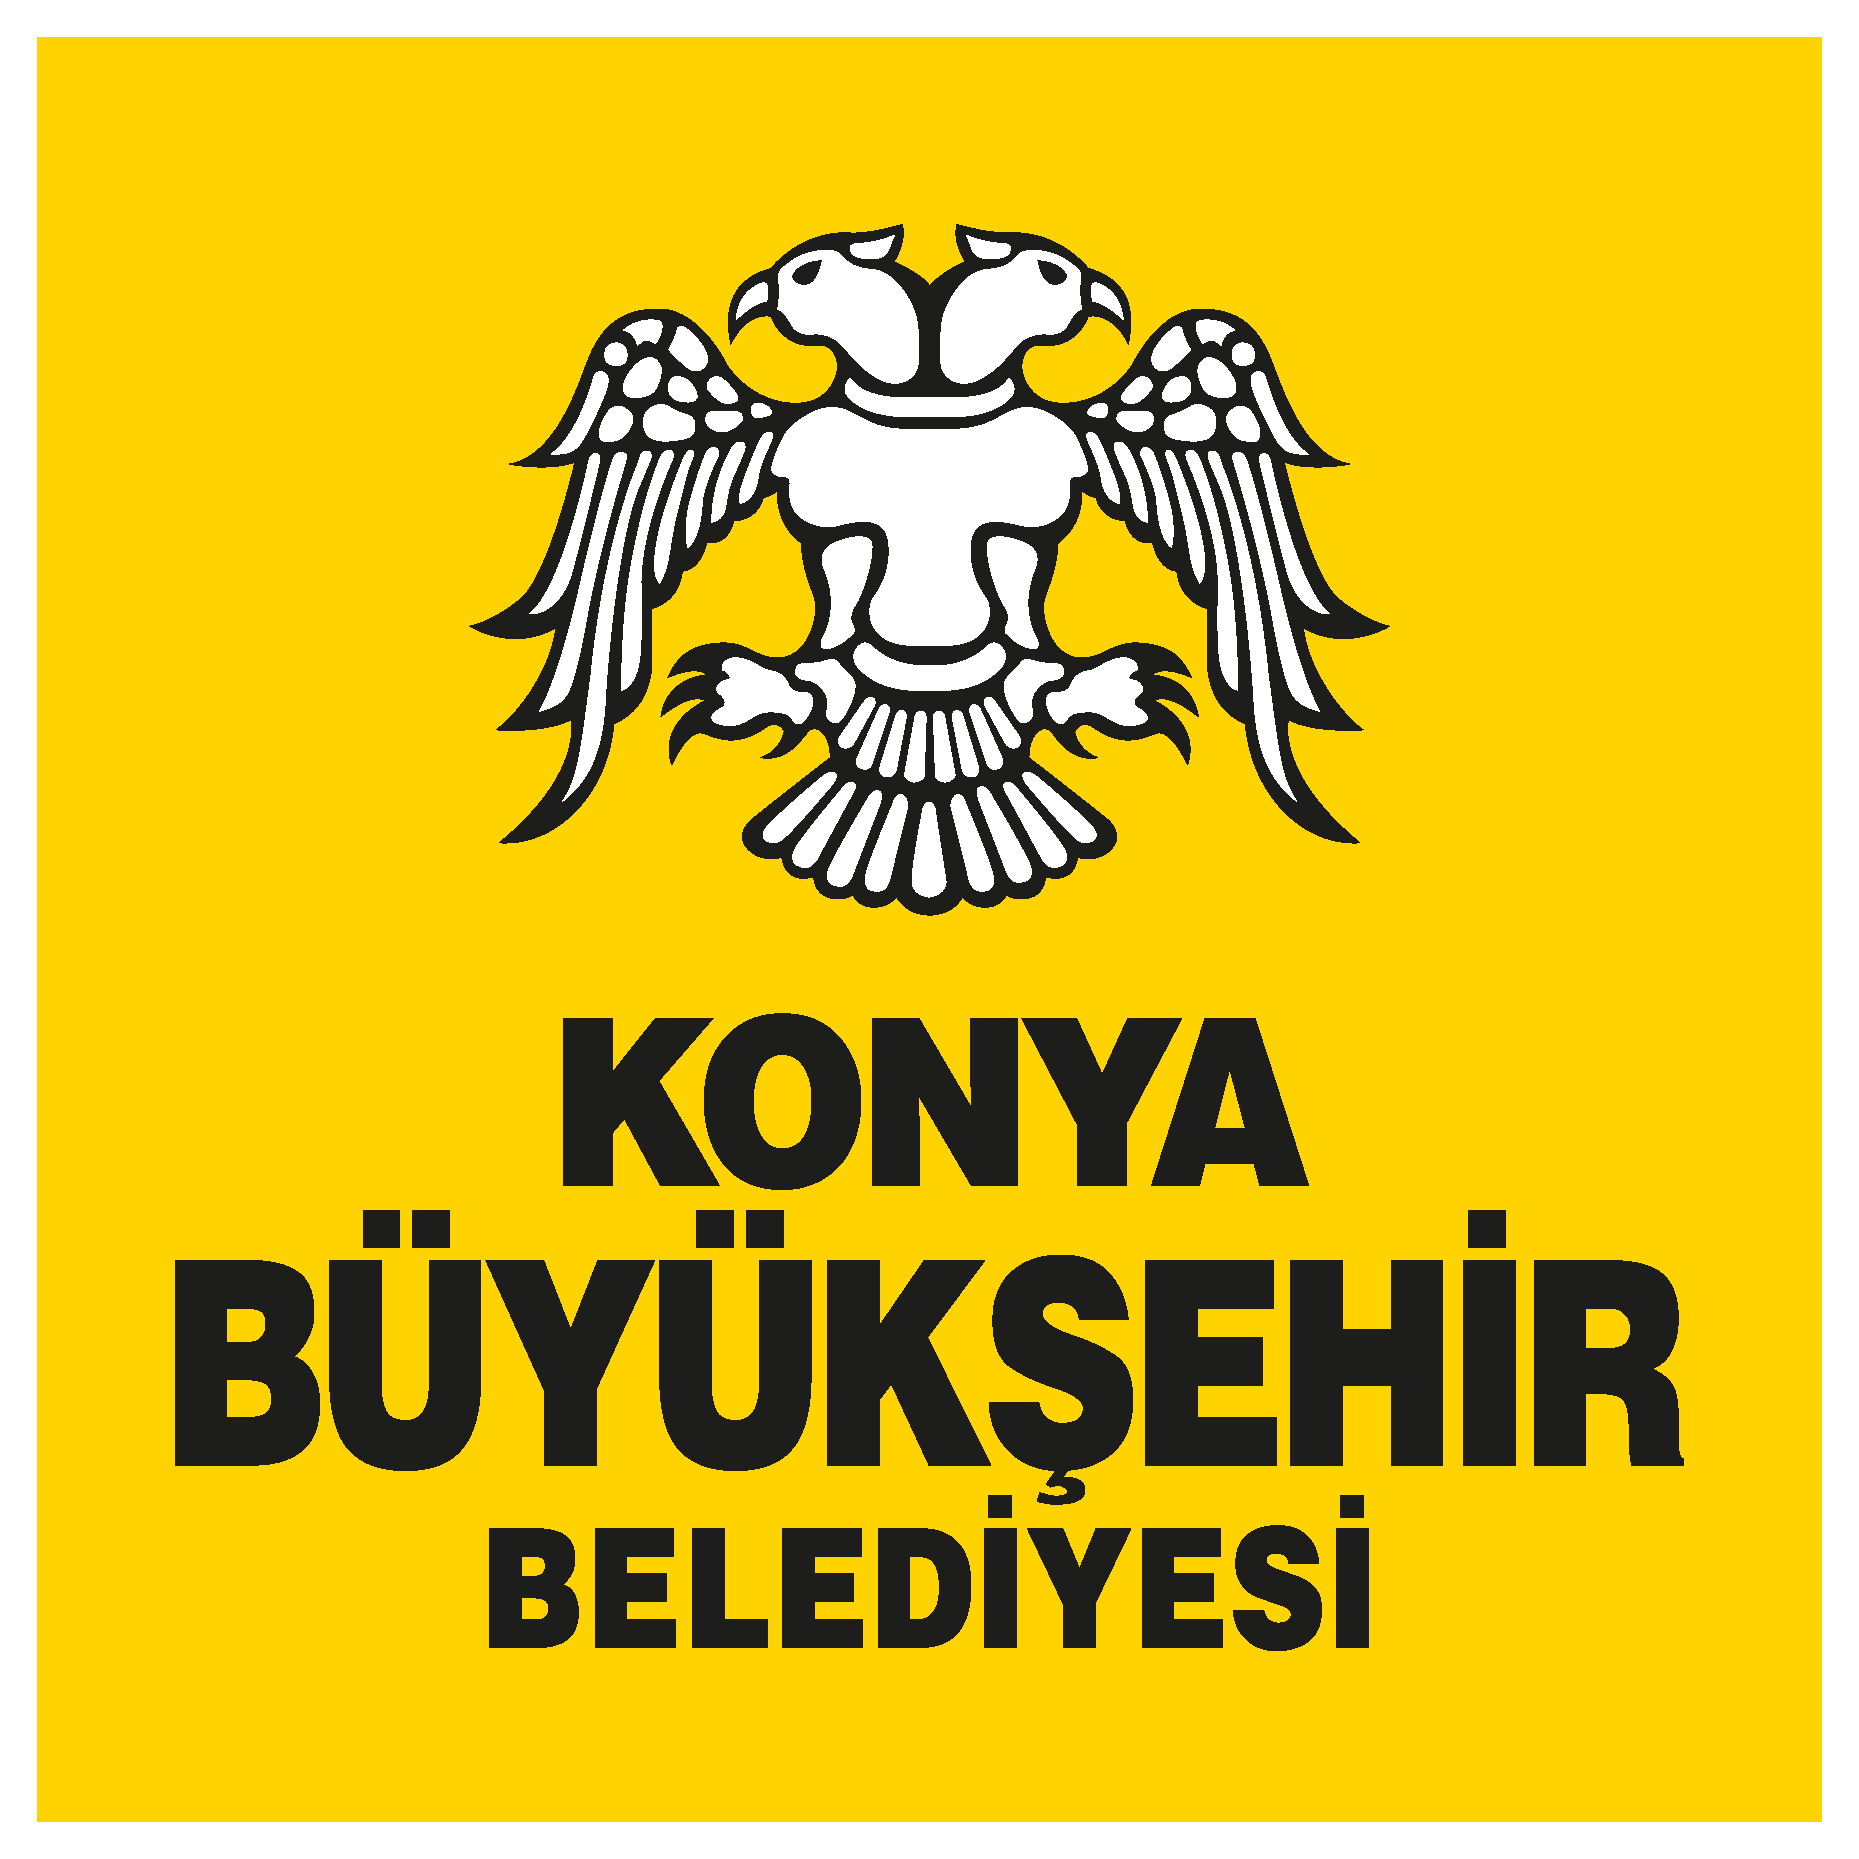 Konya Büyükşehir Belediyesi Logo png